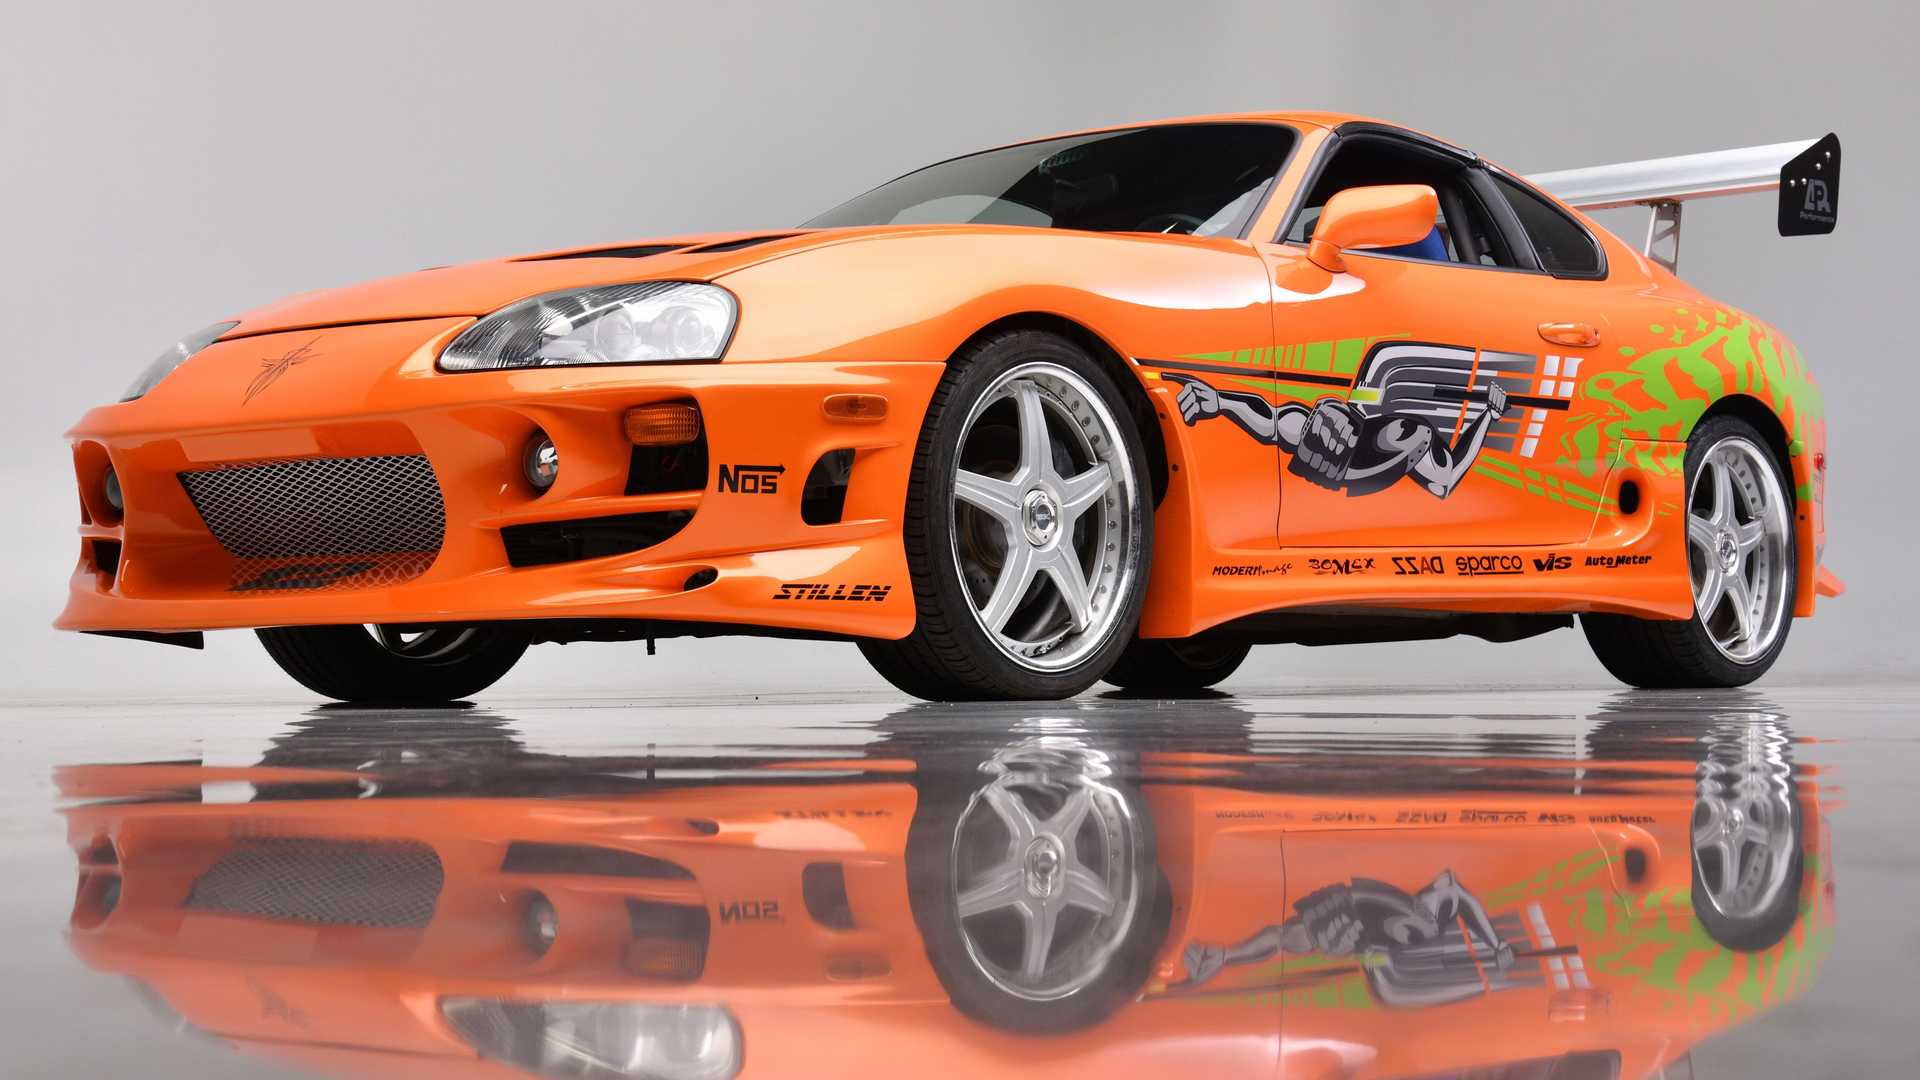 《速度与激情》中的丰田supra售价55万美元,曾是保罗·沃克的座驾